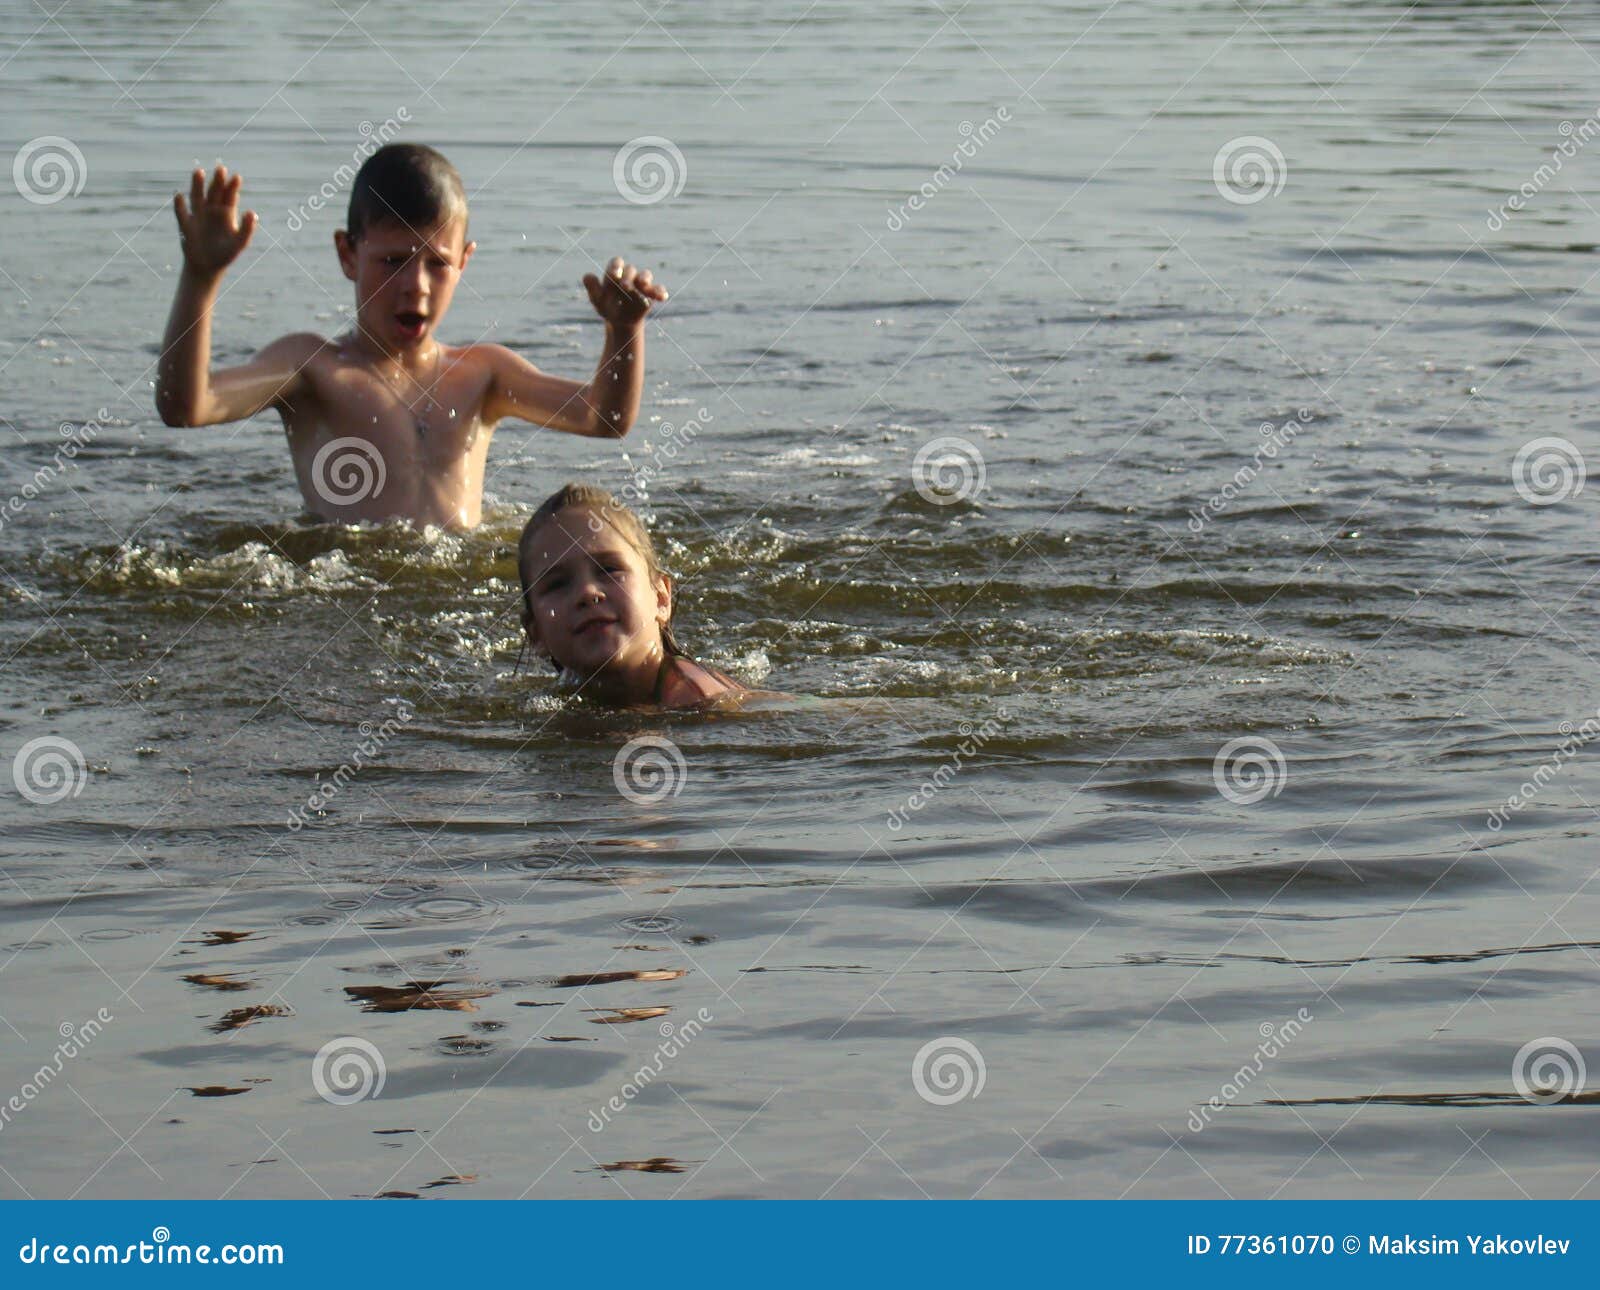 Человек выйдя из реки после купания. Дети купаются в реке. Дети моются в реке. Дети плещутся в реке. Купание на речке.